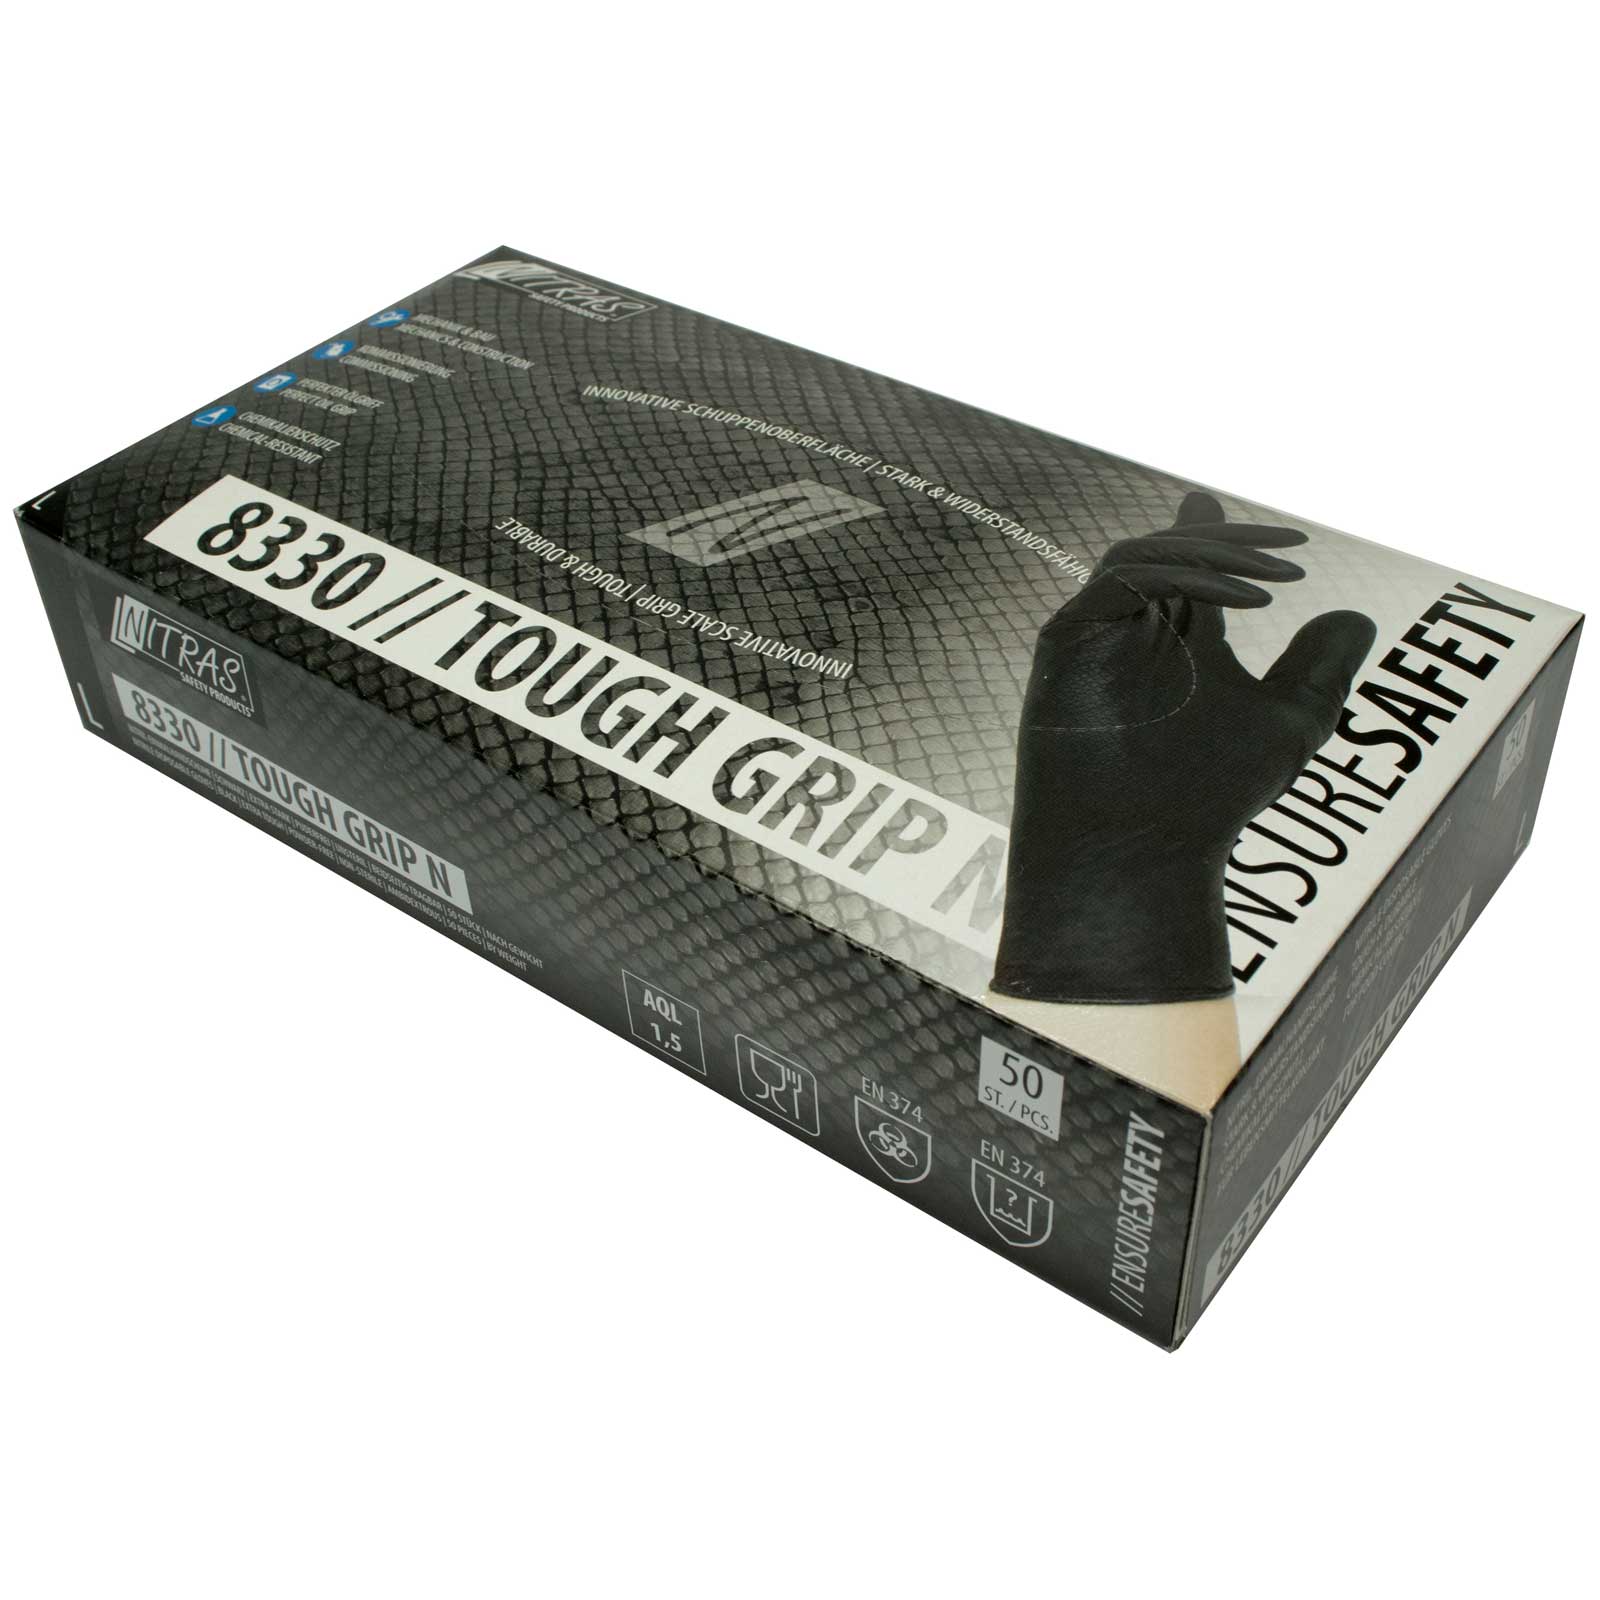 NITRAS Einmalhandschuhe Nitril Tough Grip N 8330 - puderfrei - Box à 50 Stück Größe:11 von NITRAS